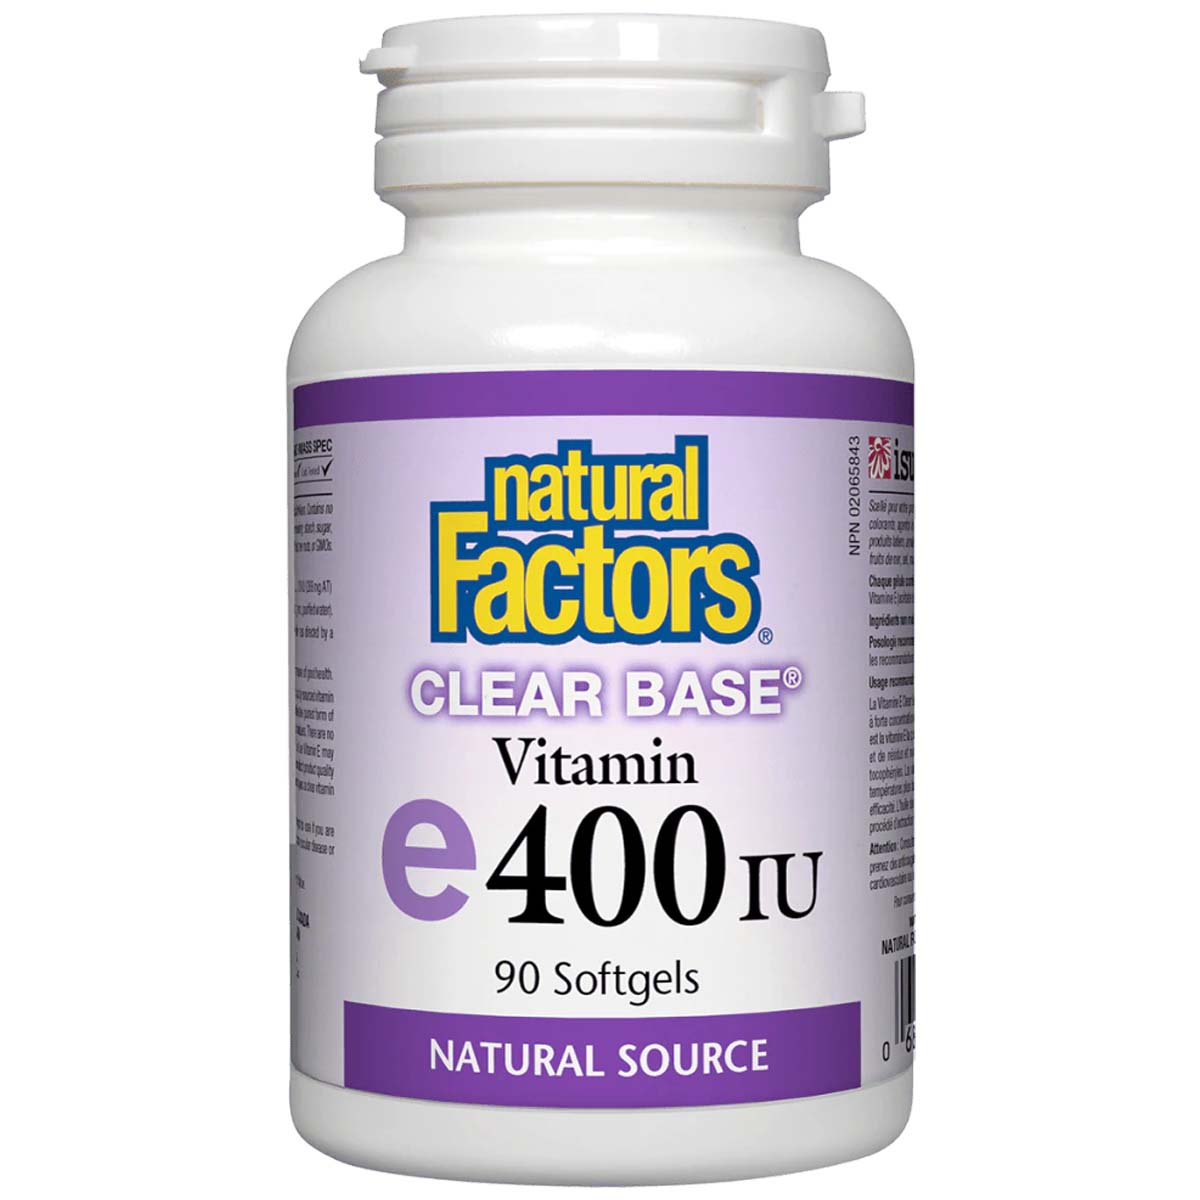 Natural Factors Clear Base Vitamin E, 400 IU, 90 Softgels